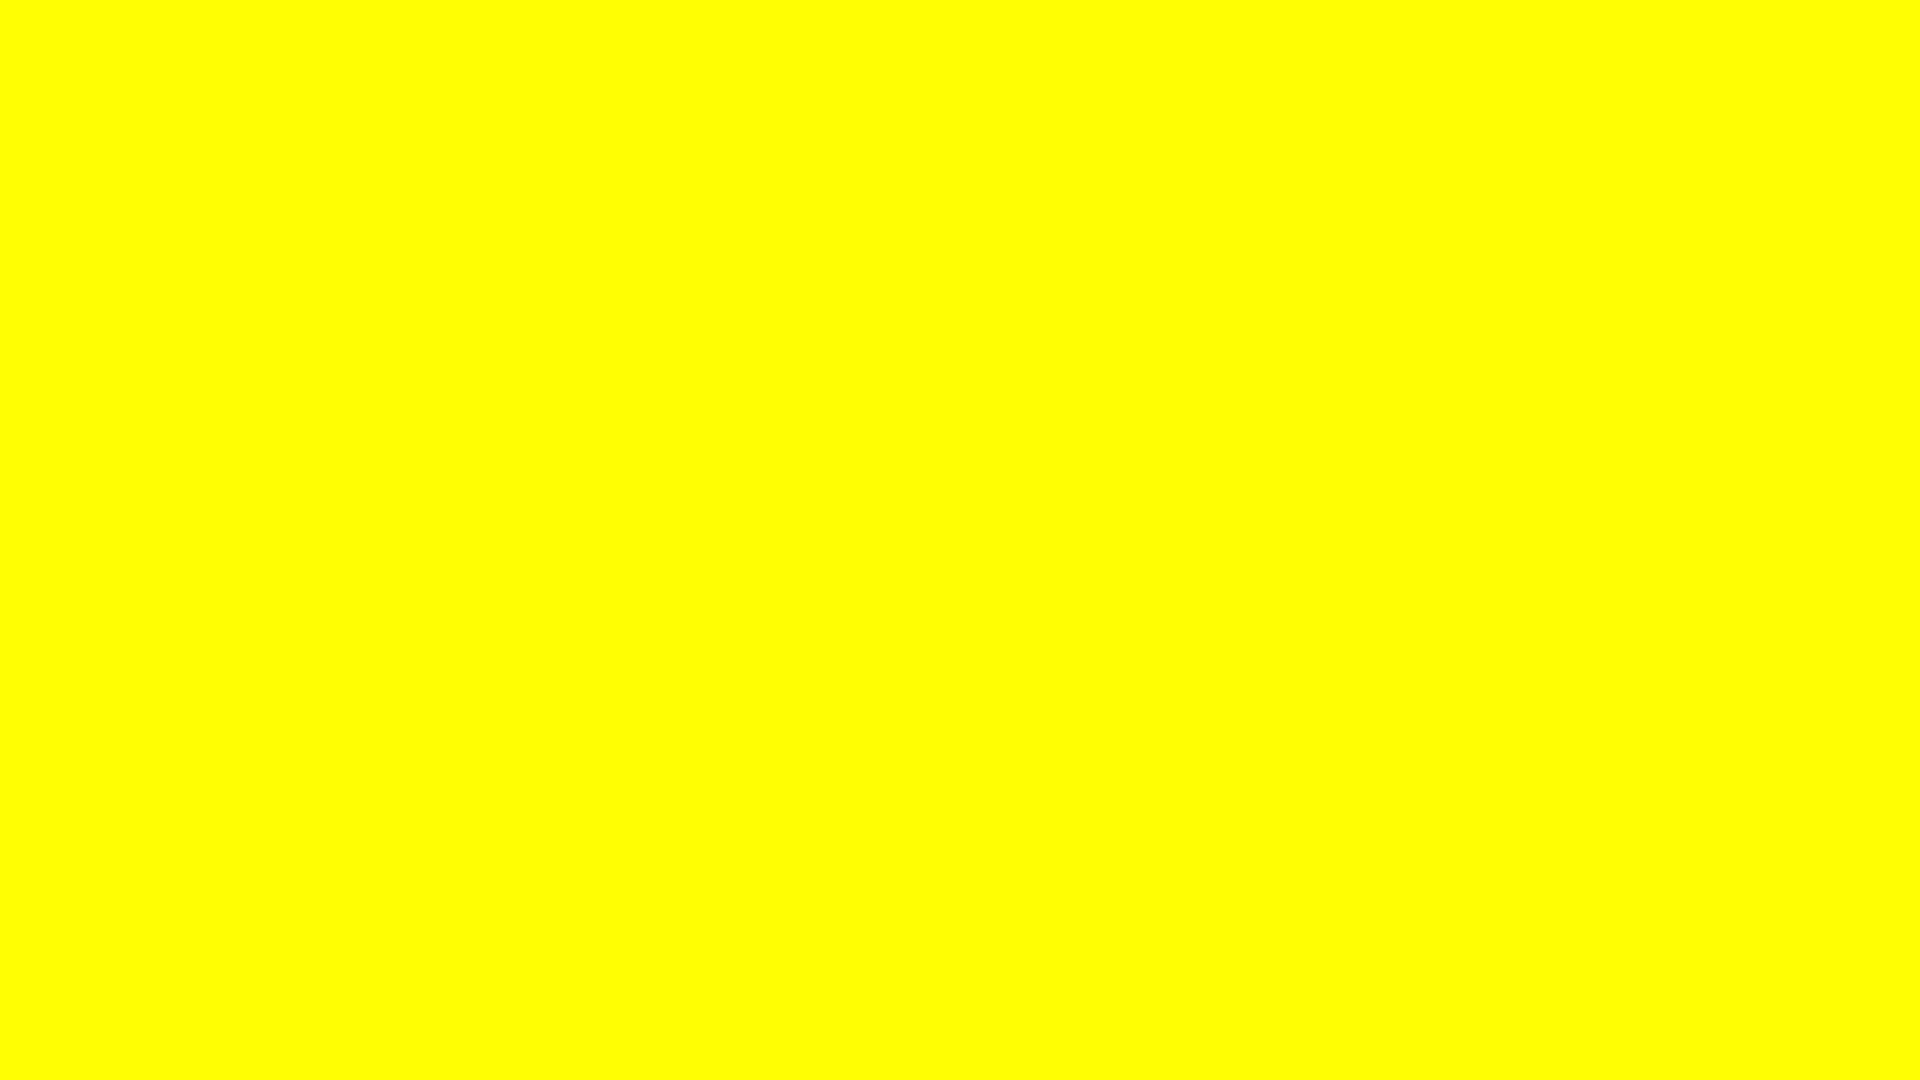 Màu vàng đơn: Hãy đắm mình trong sắc vàng tươi sáng của hình ảnh này. Màu vàng là màu của sự ấm áp, sự tươi vui và sự cảm thông. Hãy cho màu vàng đơn trở thành nguồn cảm hứng và năng lượng tích cực cho bạn!